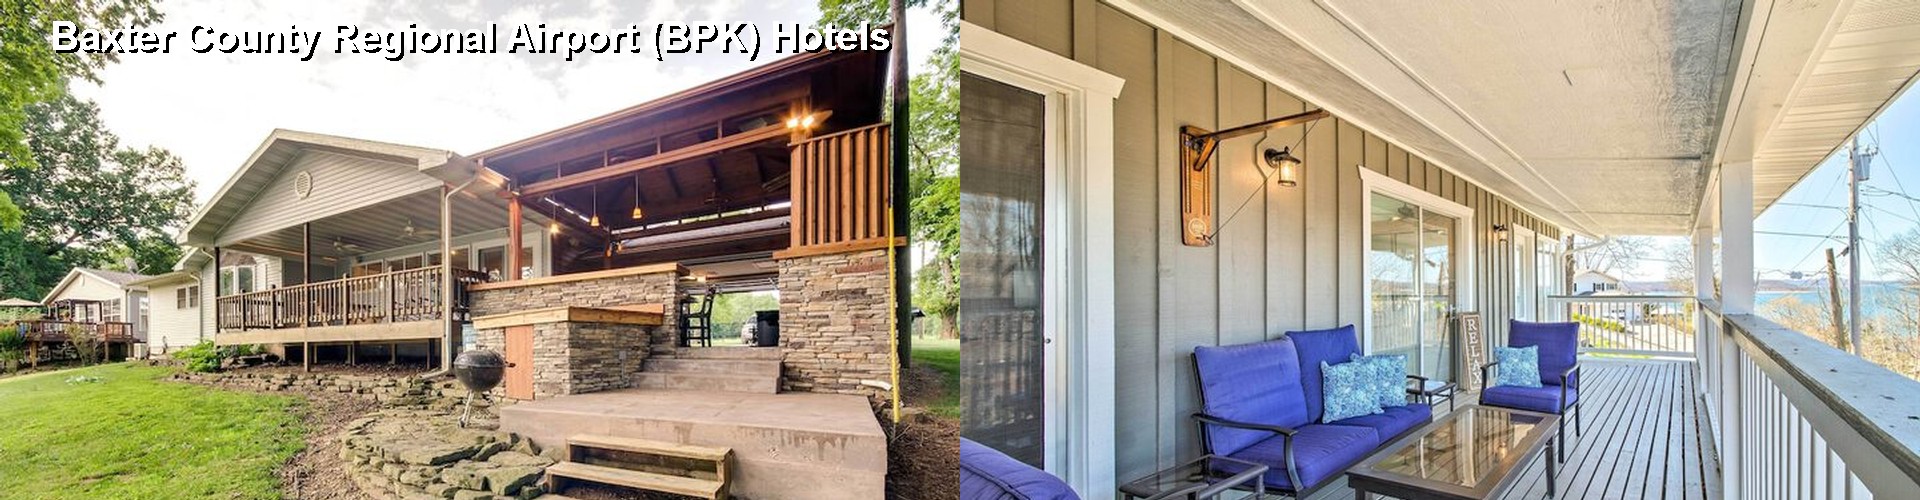 3 Best Hotels near Baxter County Regional Airport (BPK)